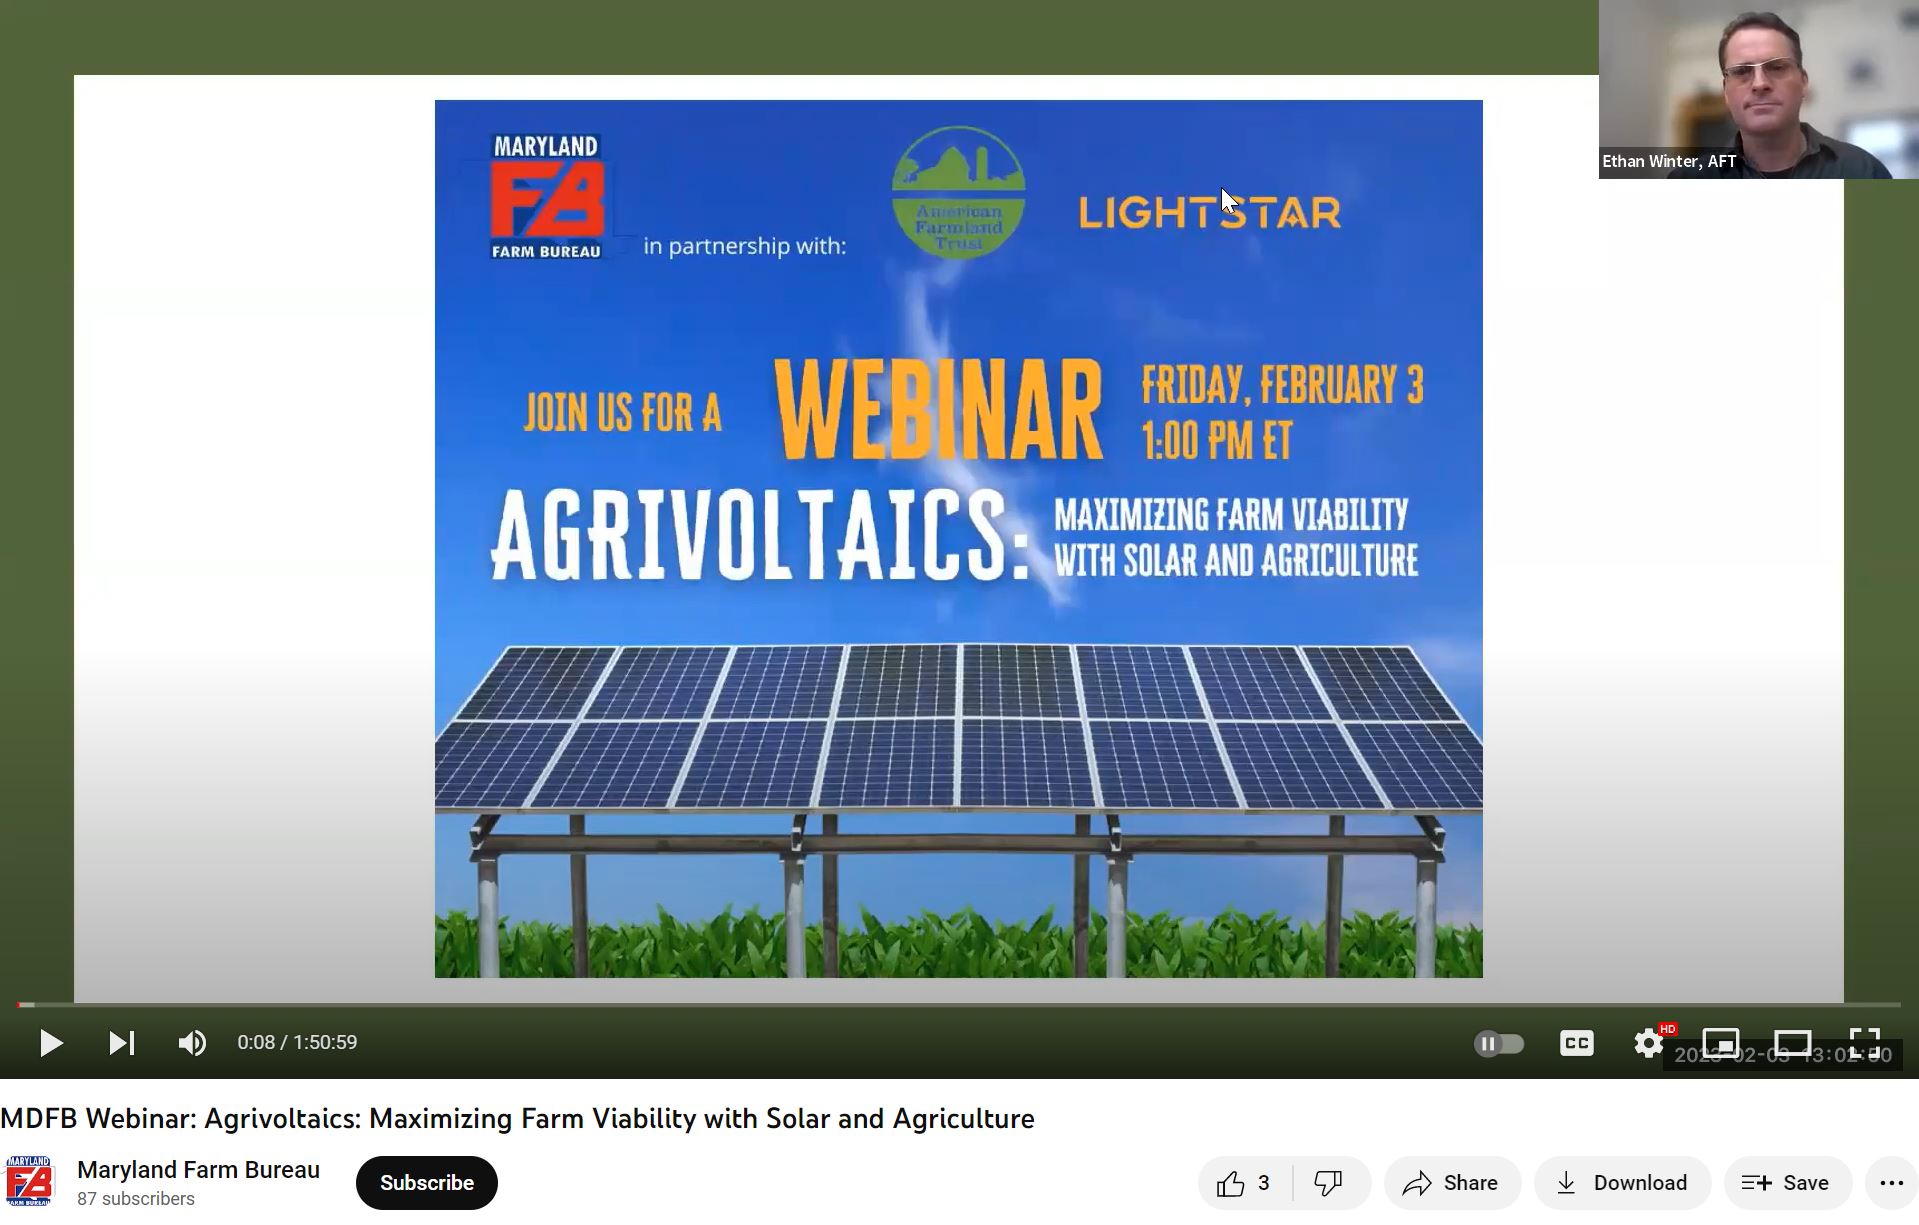 MDFB Webinar: Agrivoltaics: Maximizing Farm Viability with Solar and Agriculture